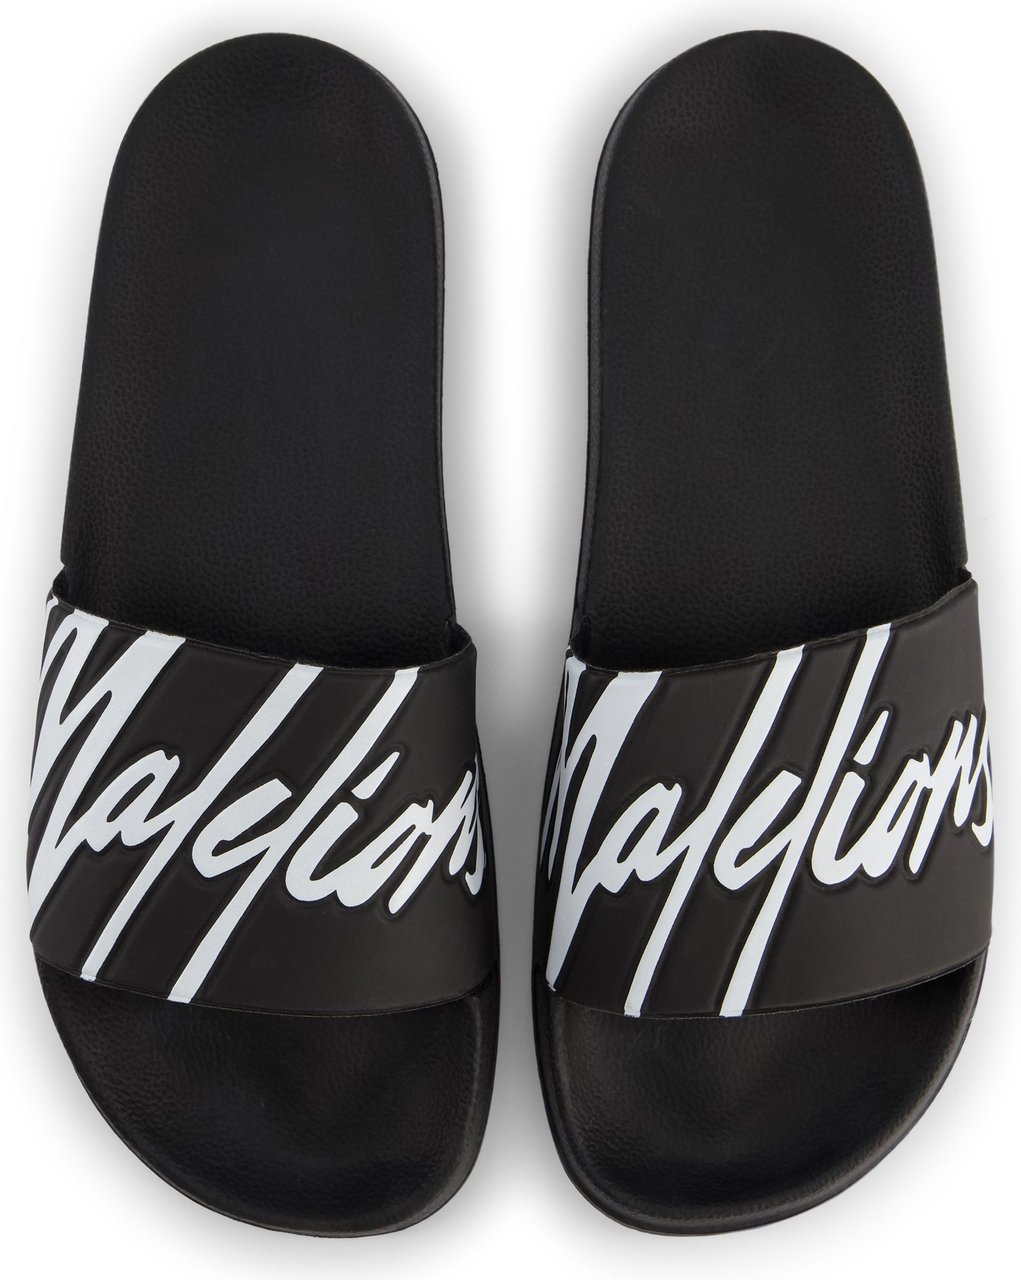 Malelions Signature Slides - Black/White Zwart